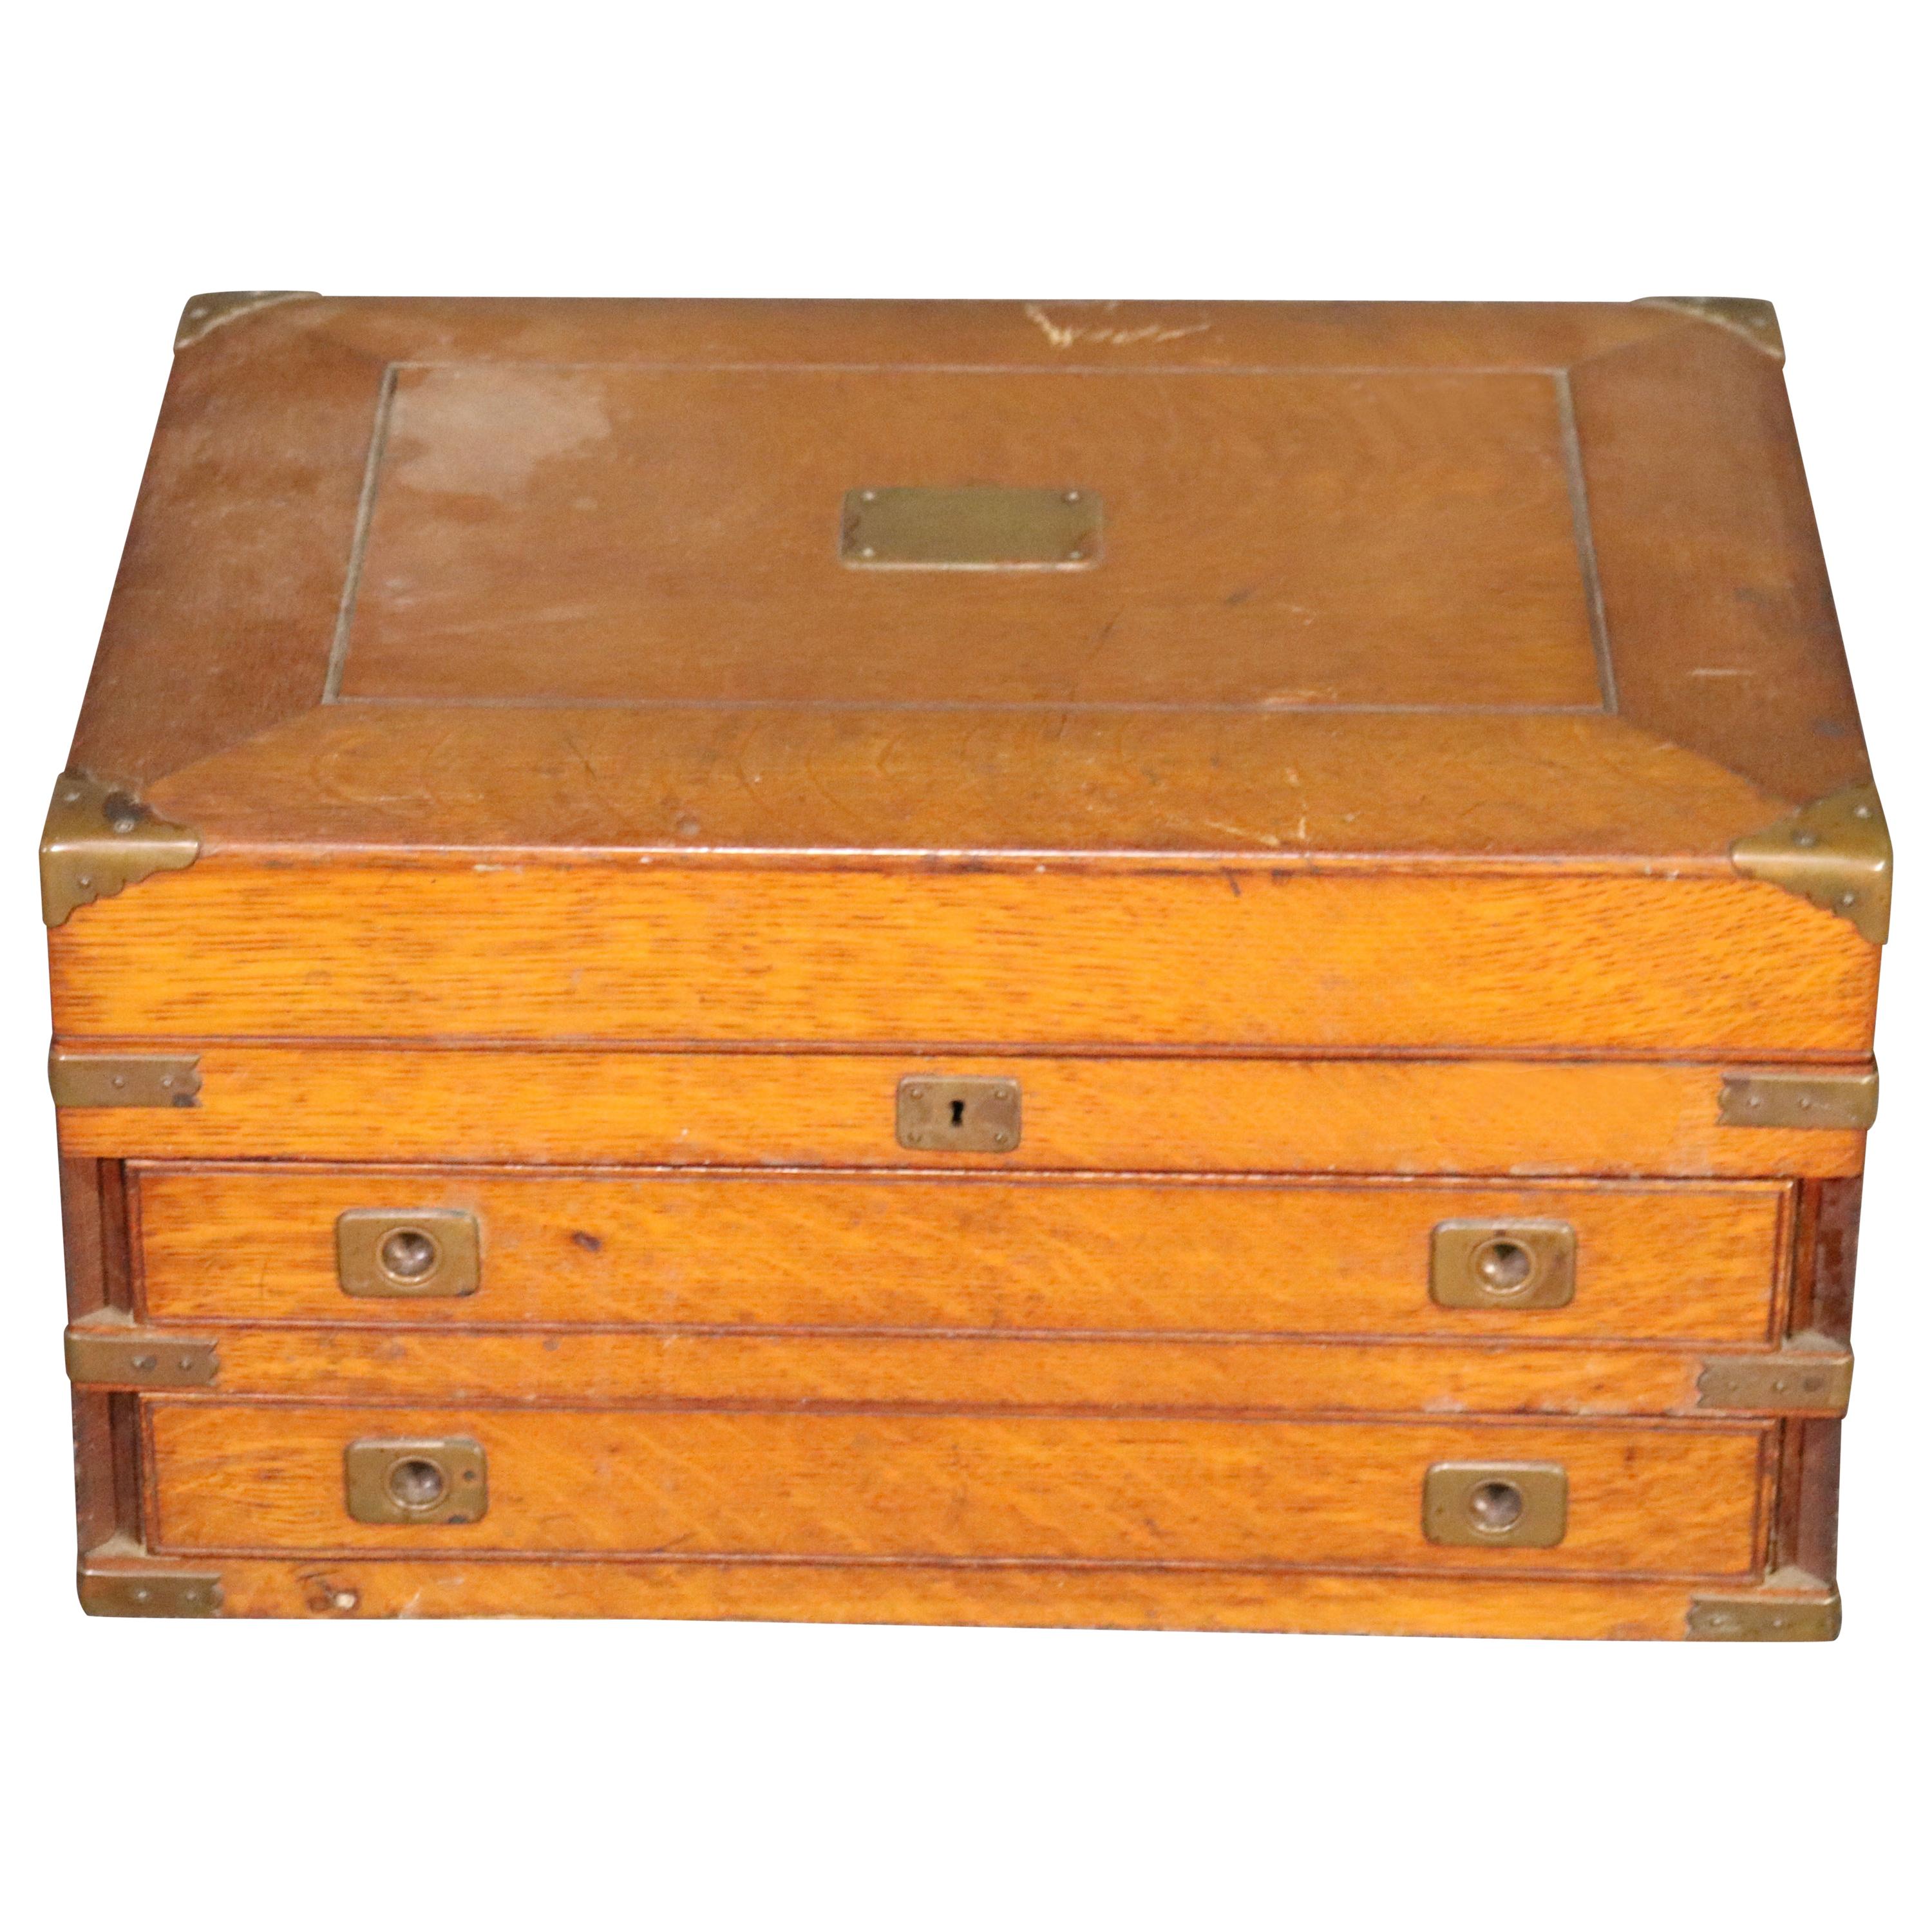 Solid Quarter Sawn Oak Campaign Style Silverware Box, circa 1900